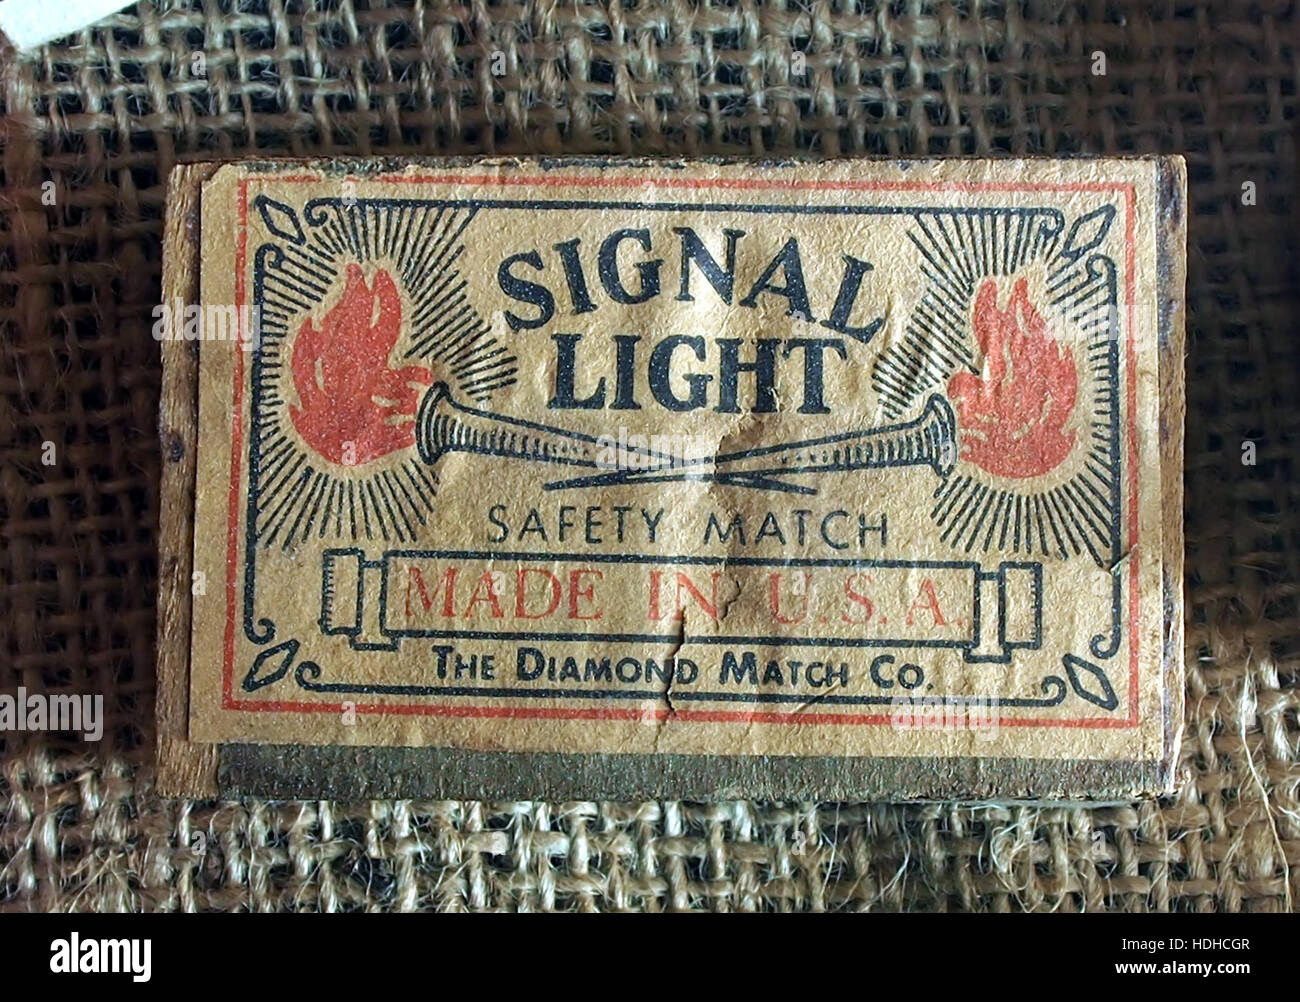 Luz de señal matchbox de WW2, Museo invierno 1944 en Gingelom Foto de stock